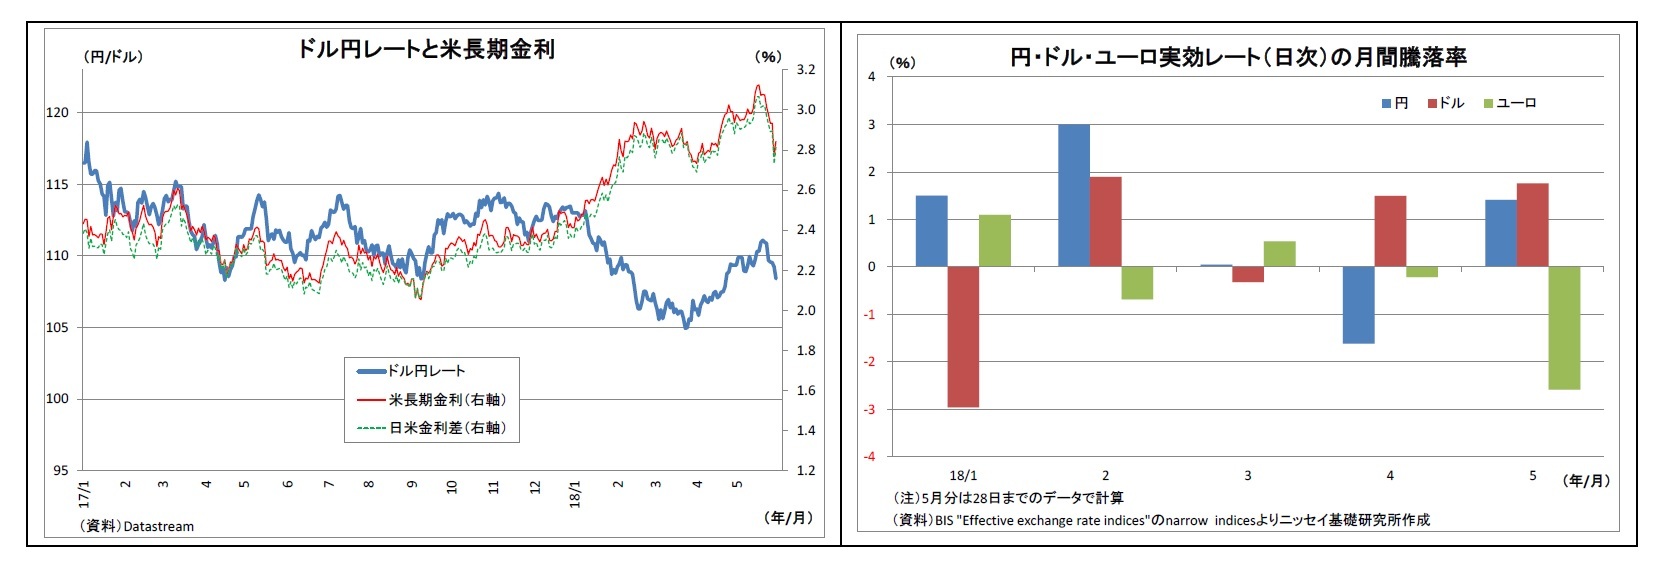 ドル円レートと米長期金利/円・ドル・ユーロ実効レート（日次）の月間騰落率